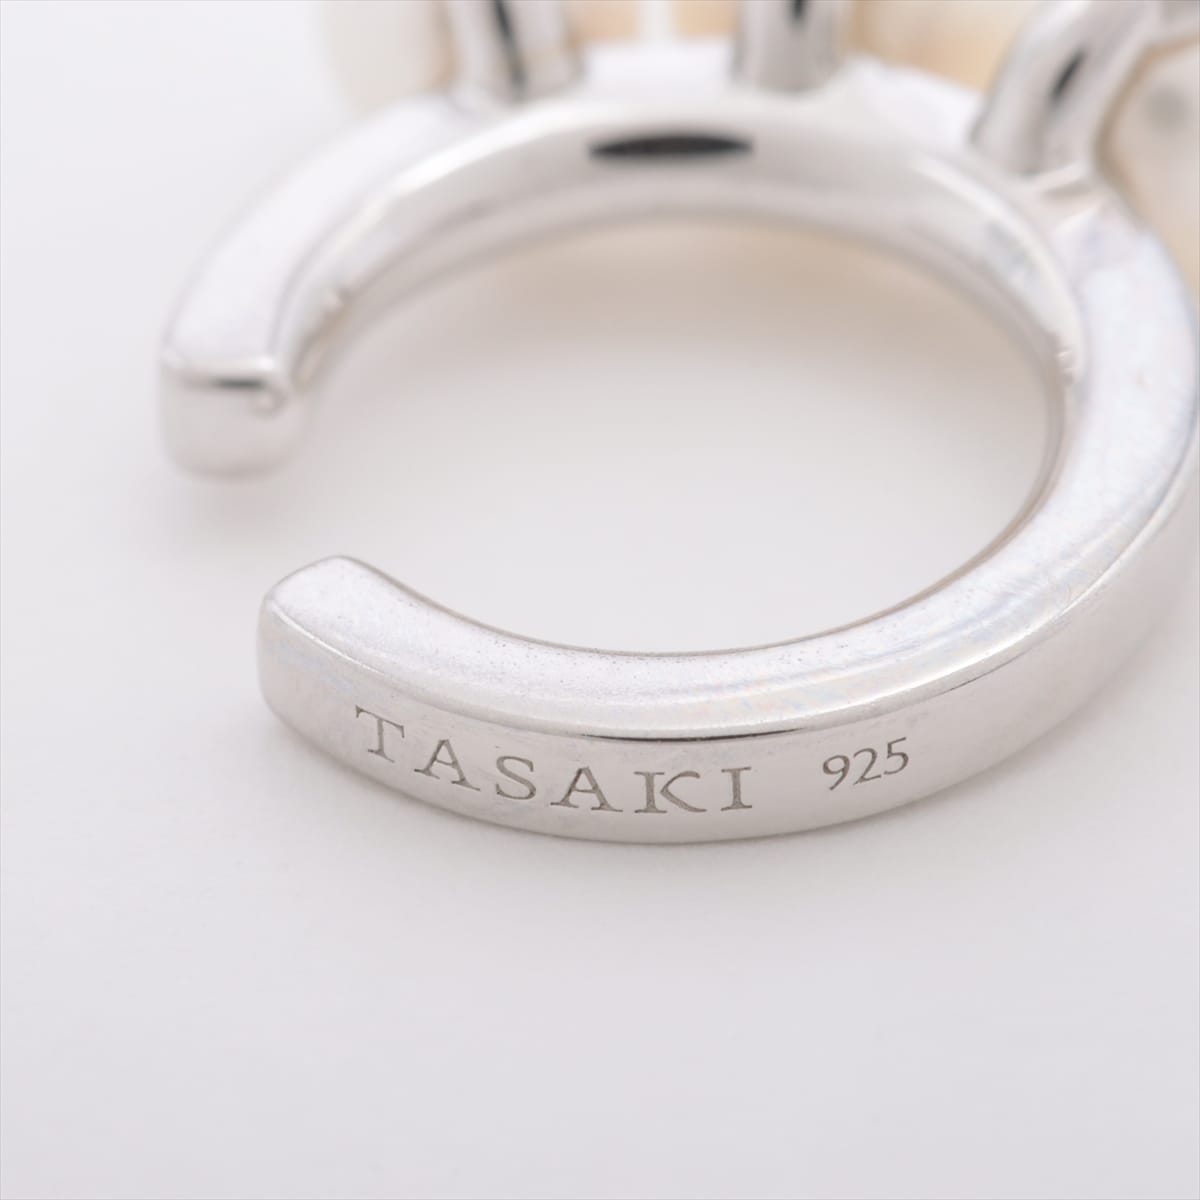 TASAKI Danger Pearl Ear Cuff SV925 1.7g